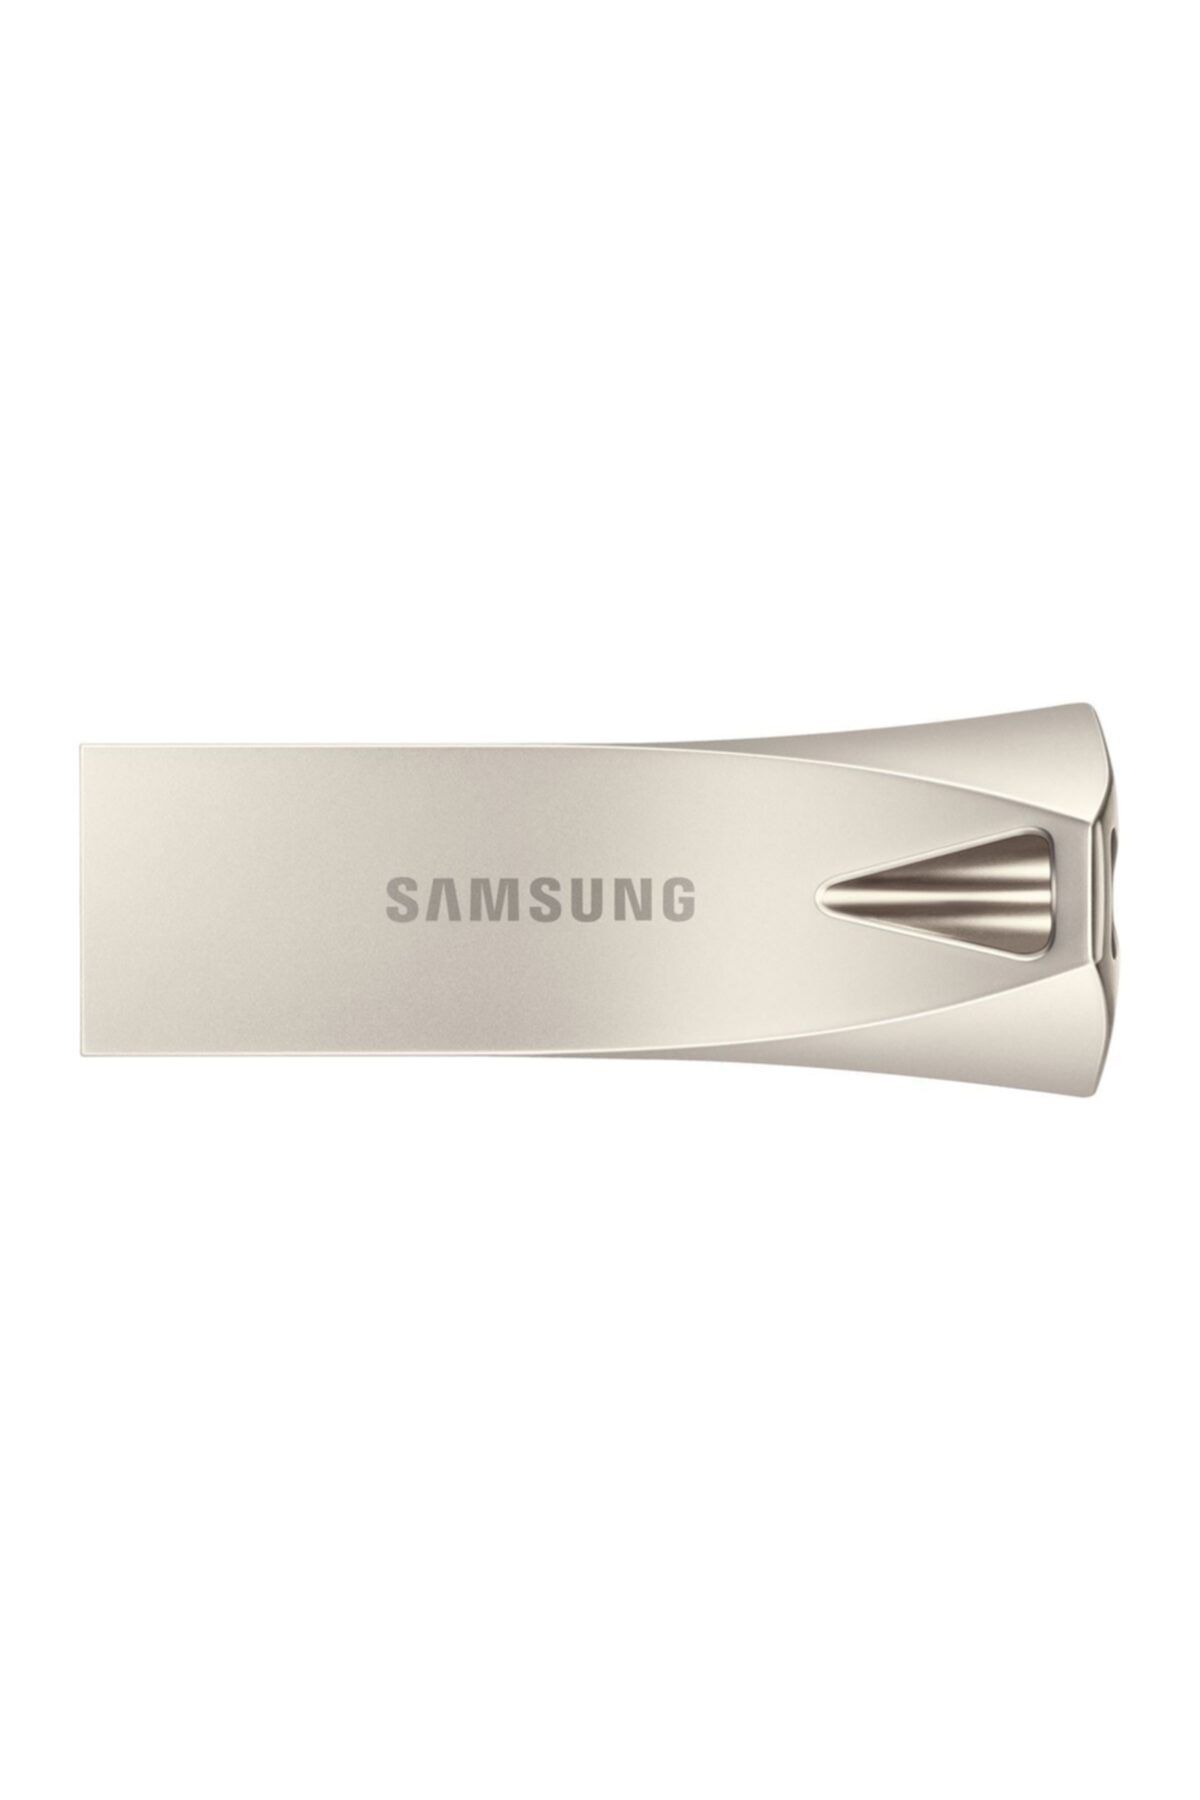 Samsung Bar Plus 256GB USB 3.1 Flash Bellek Gümüş MUF-256BE3/APC